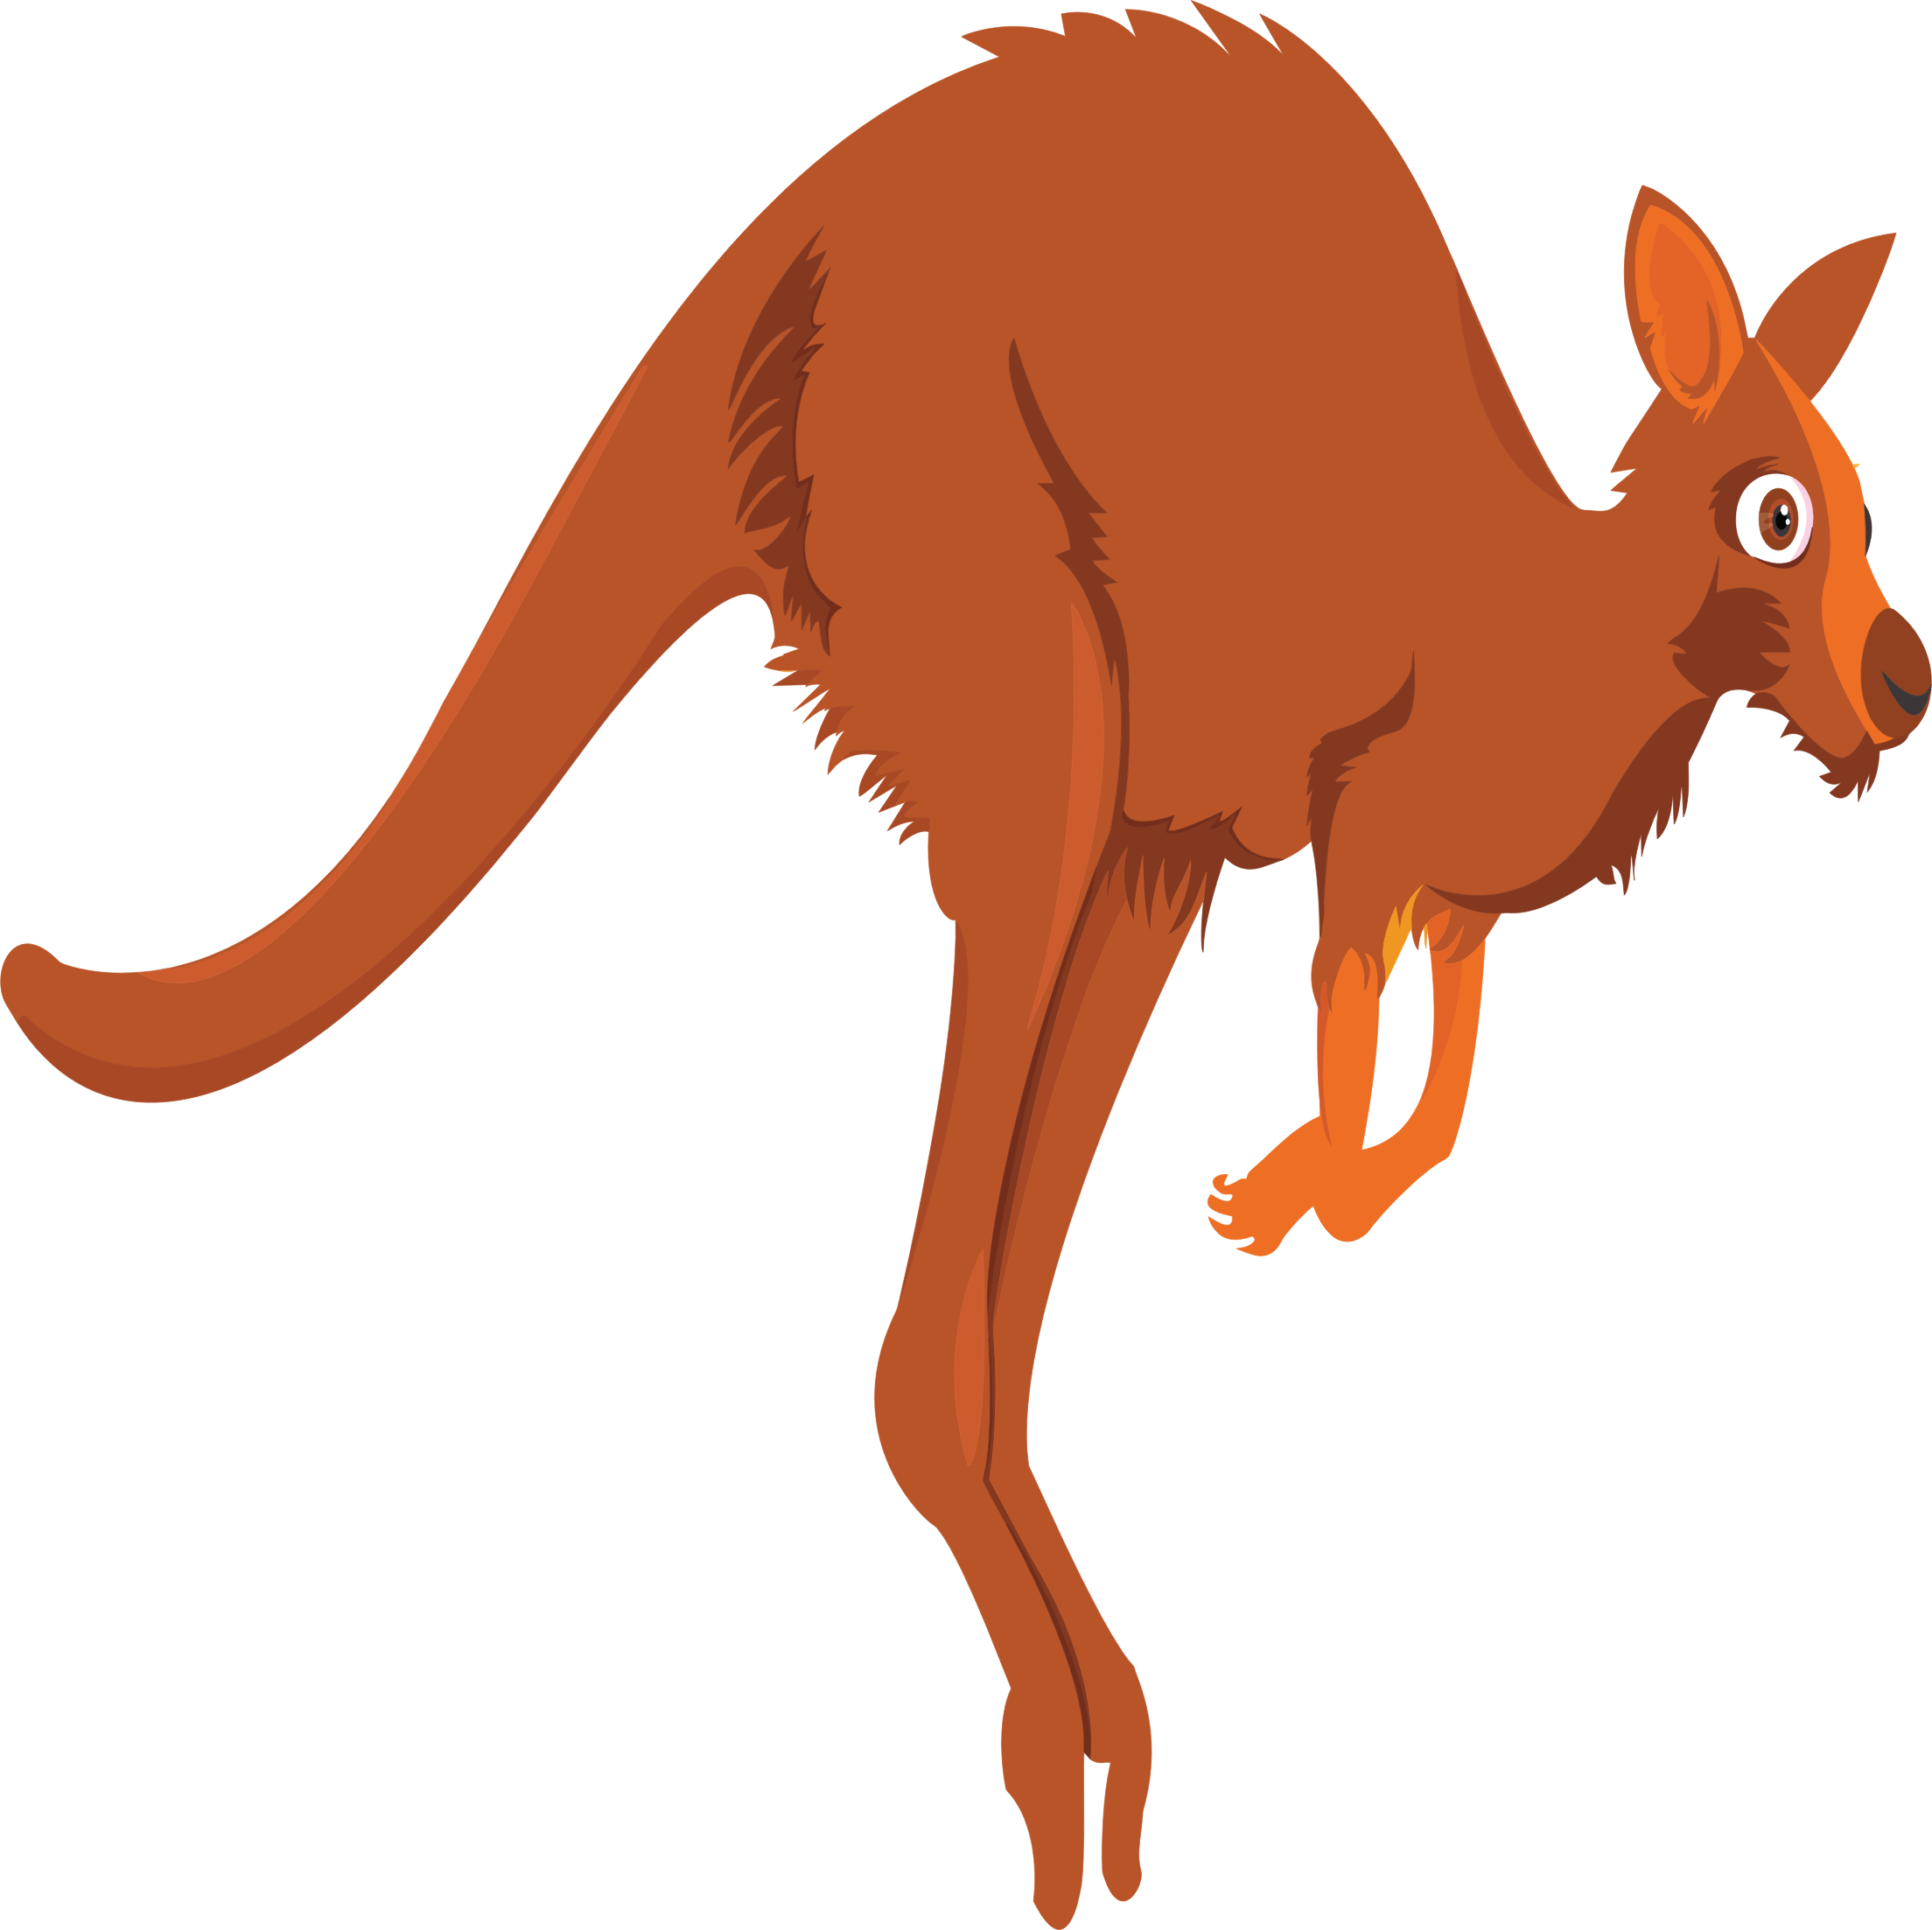 Kangaroo big image png. Hops clipart cartoon